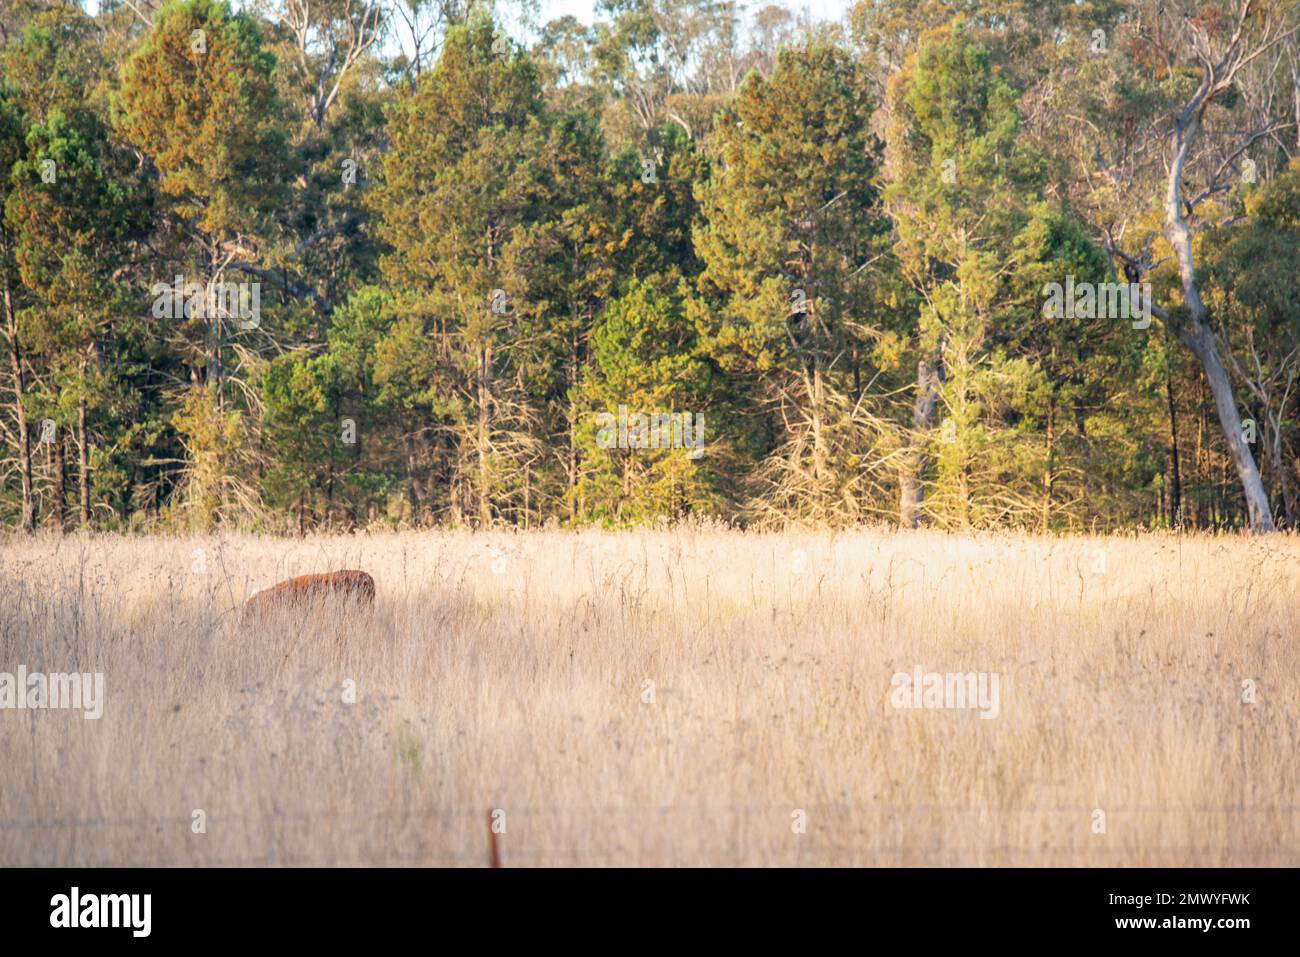 Une vache (bovins de boucherie) presque cachée dans une longue herbe dans un enclos d'une ferme australienne Banque D'Images